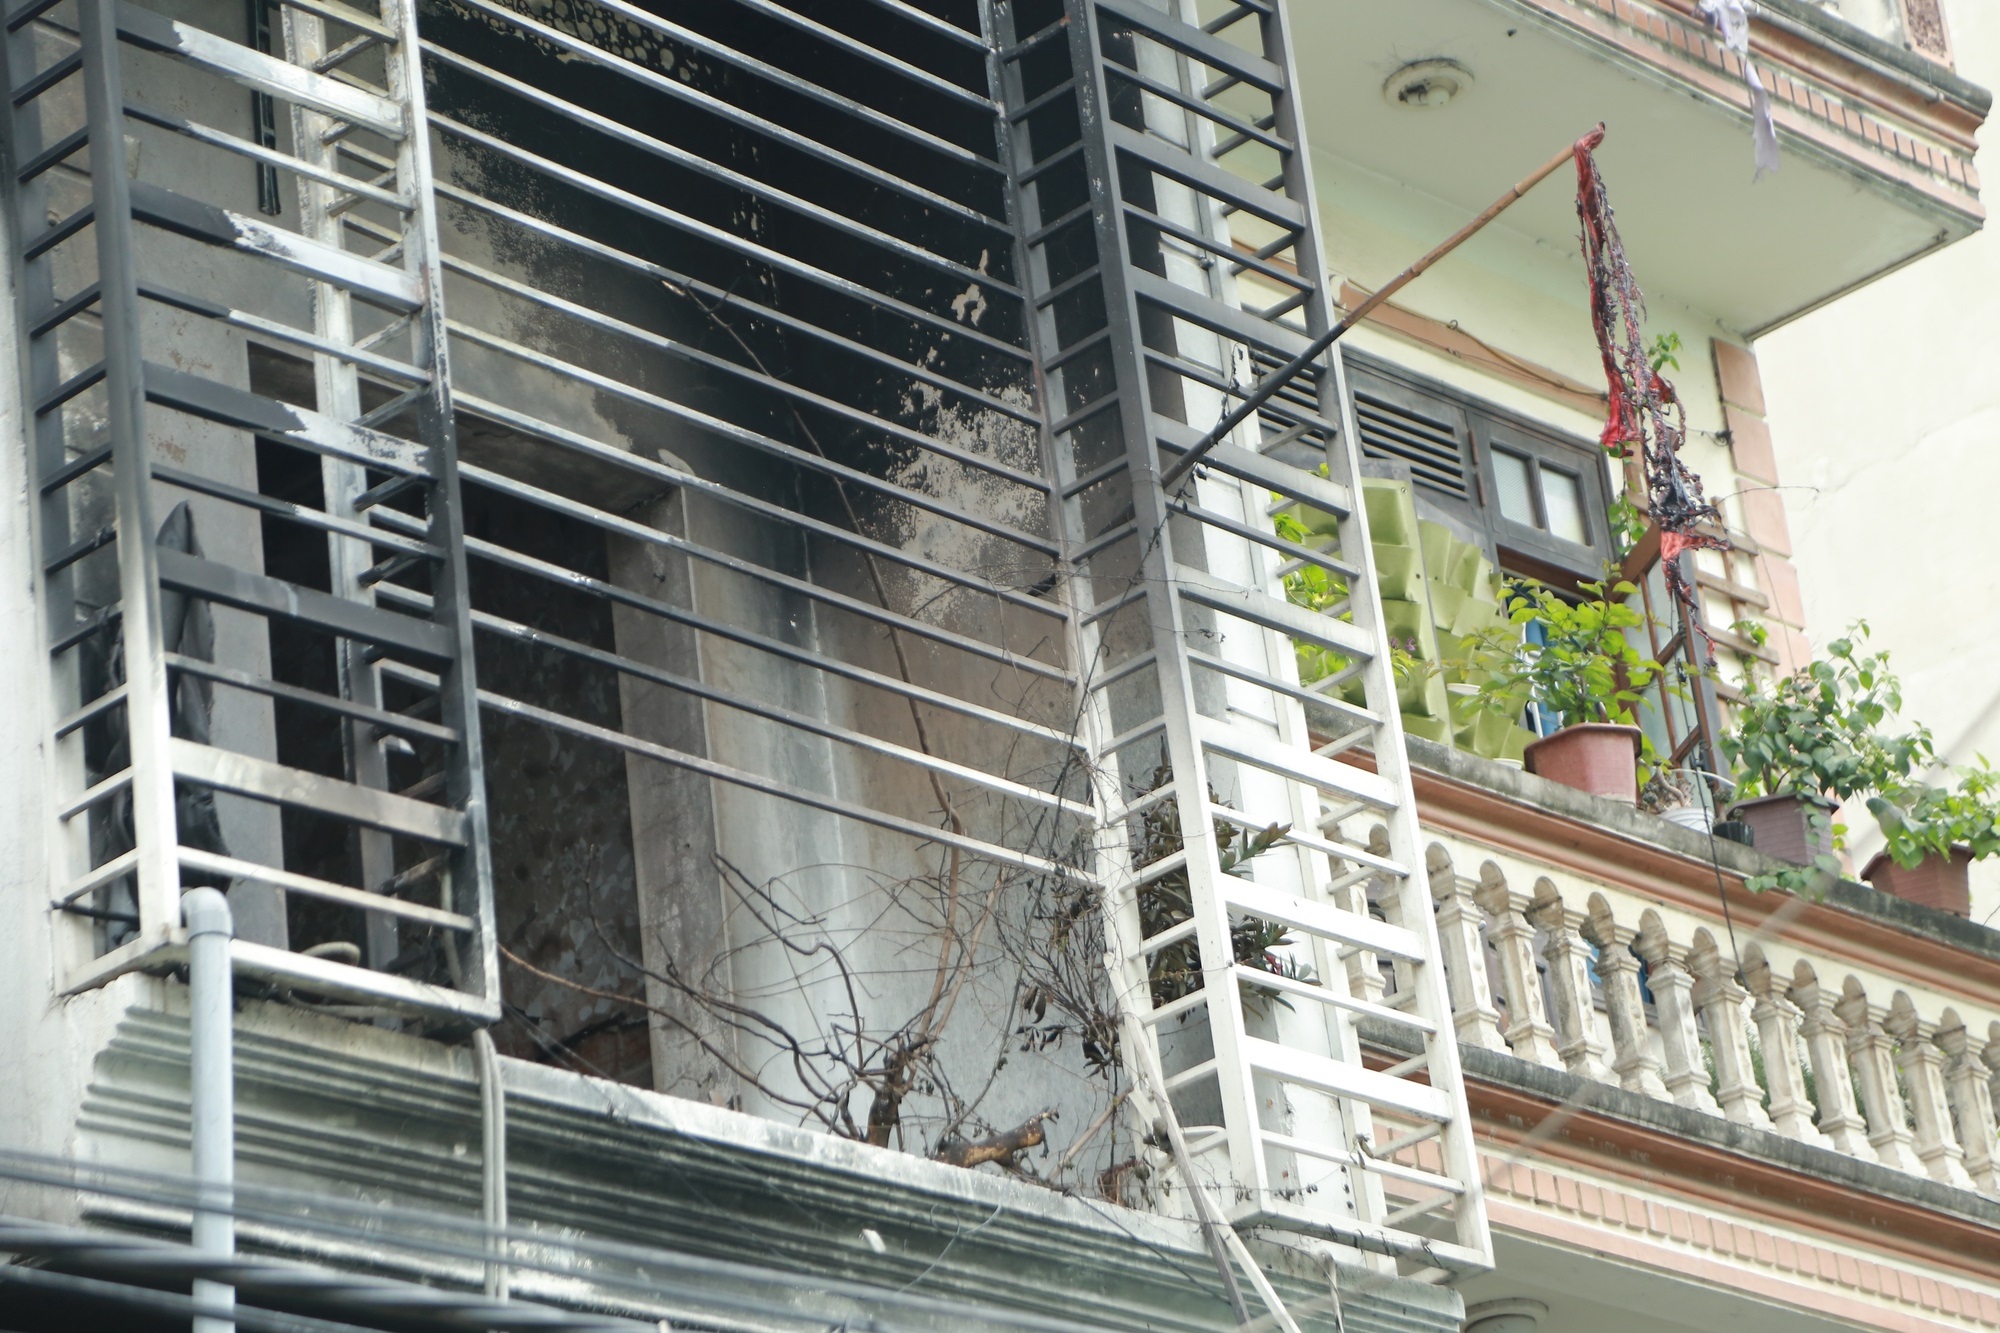 Từ vụ cả gia đình leo ban công thoát nạn cháy nhà ở Hà Nội: Hãy bỏ 'chuồng cọp' và dạy con biết xử lý thế nào khi có hỏa hoạn - Ảnh 2